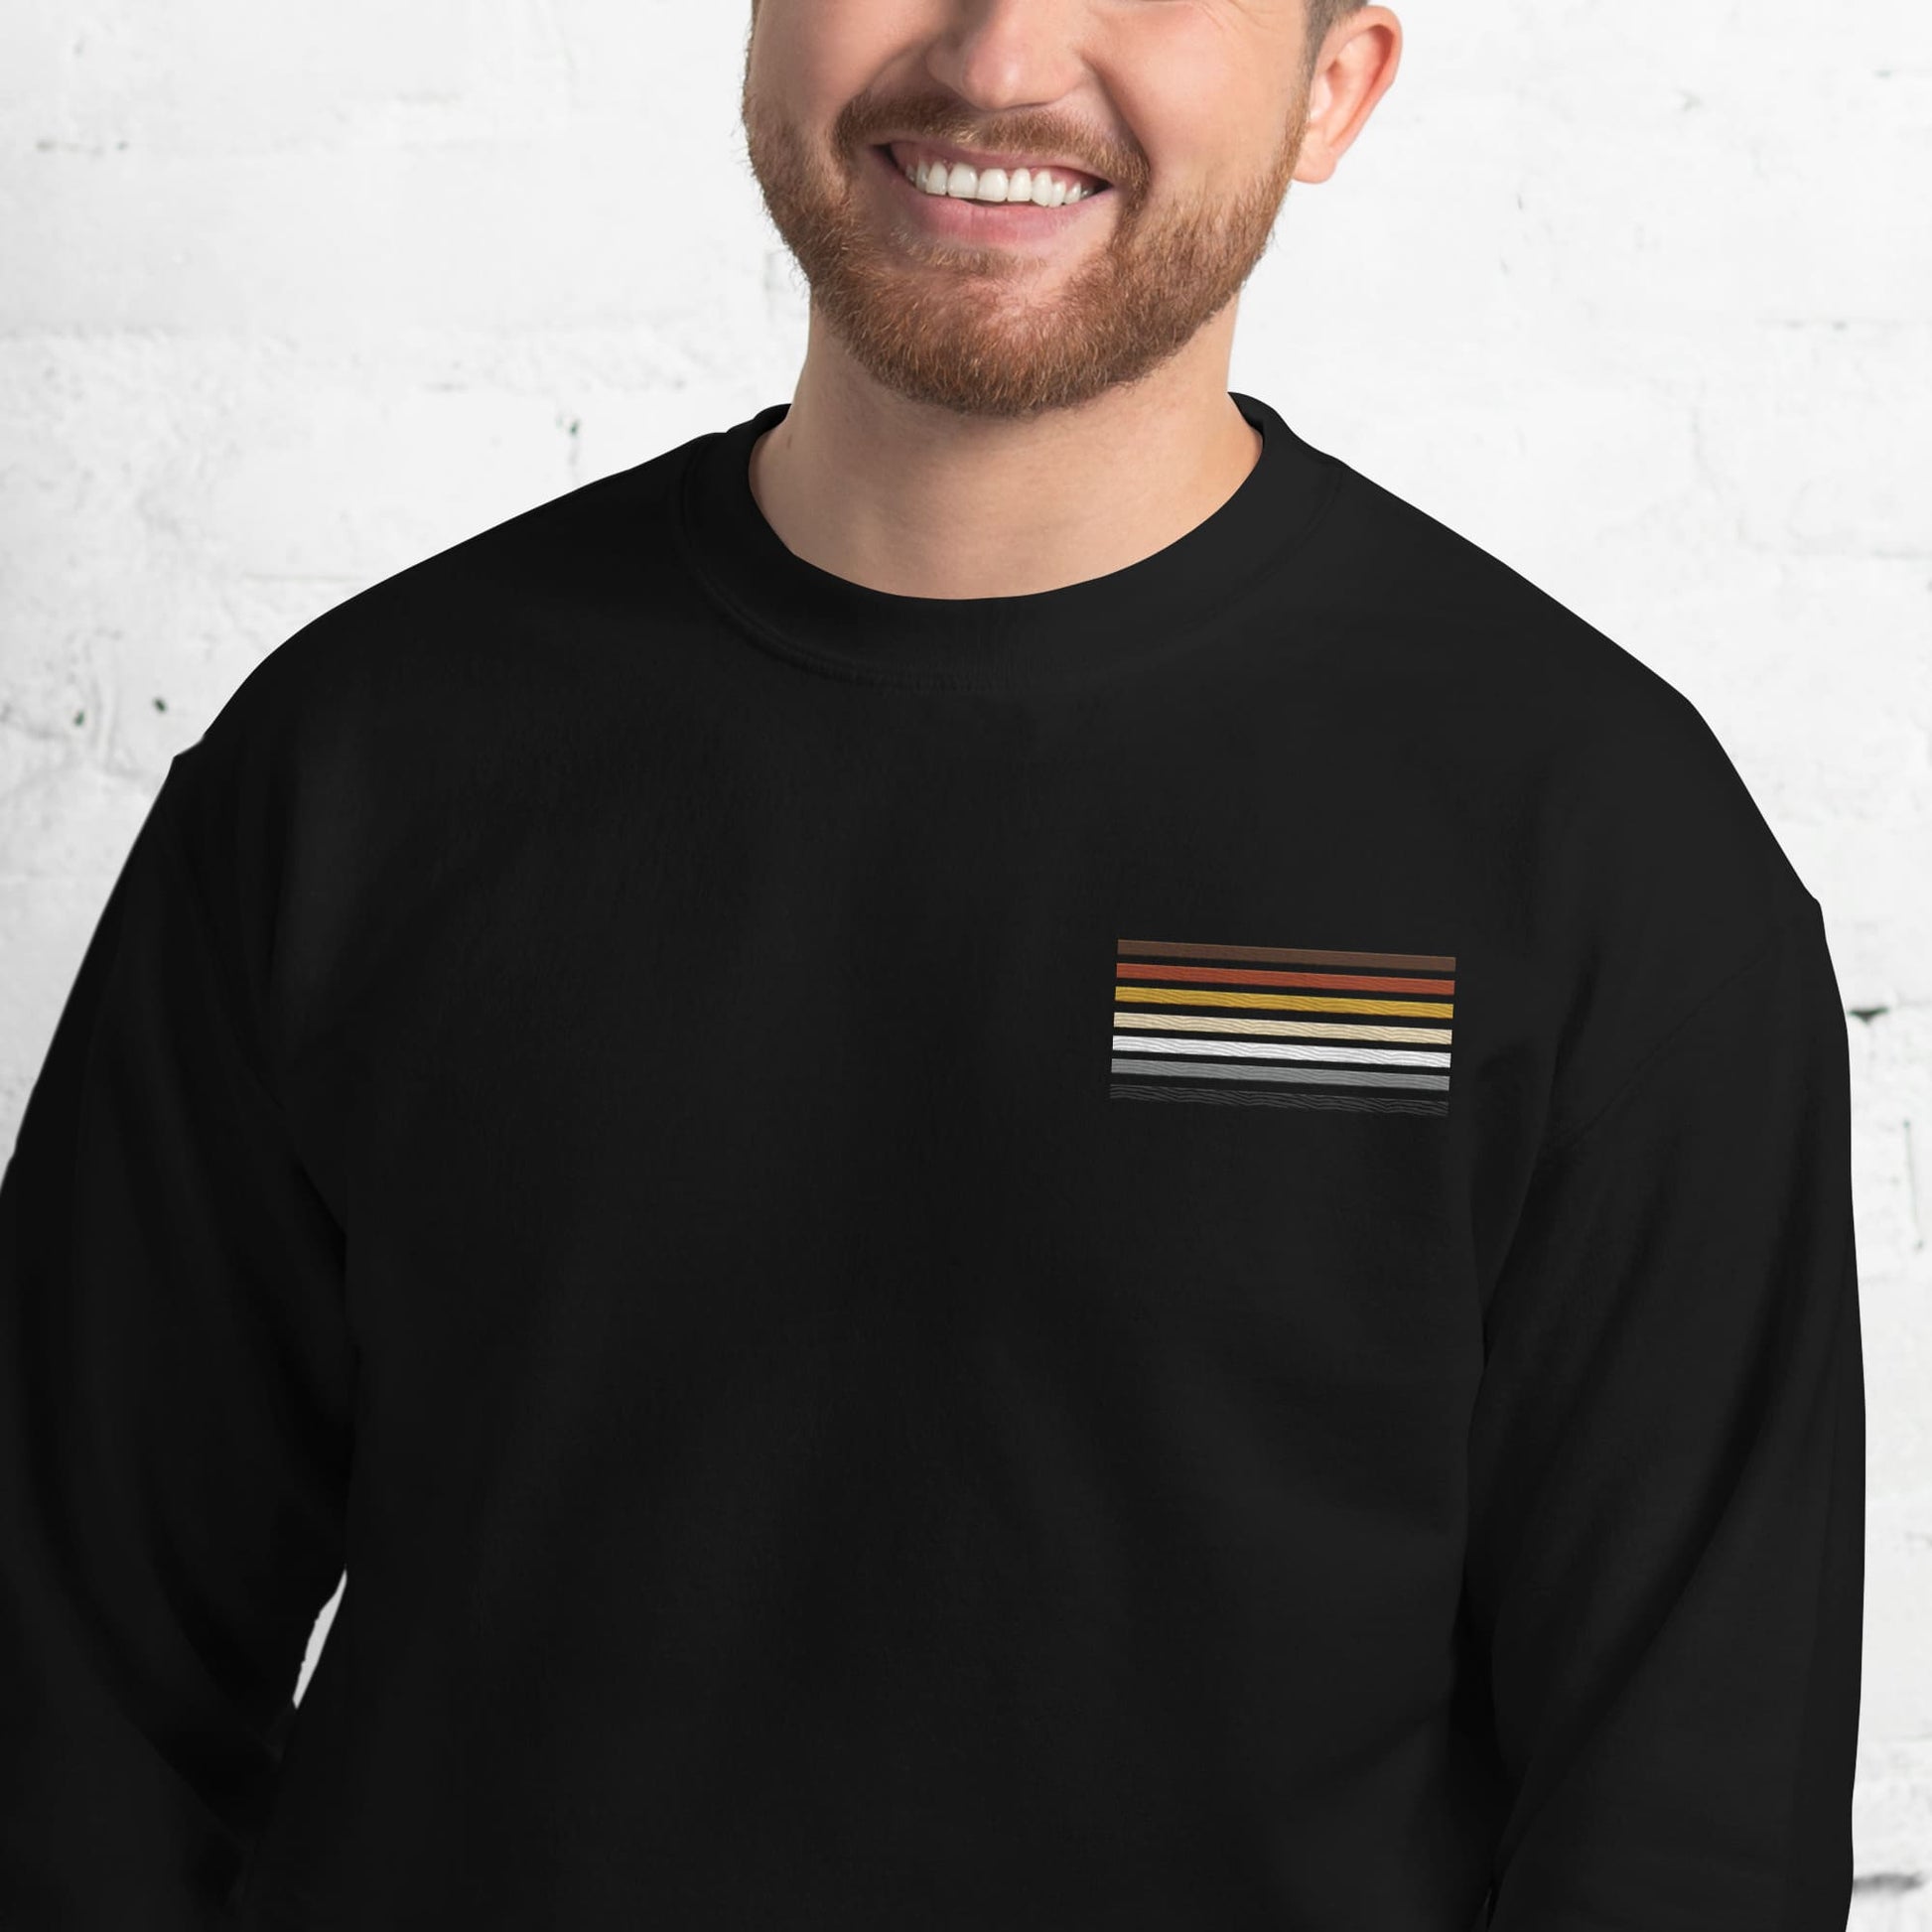 bear pride sweatshirt, subtle gay bear flag embroidered pocket design sweater, model 1